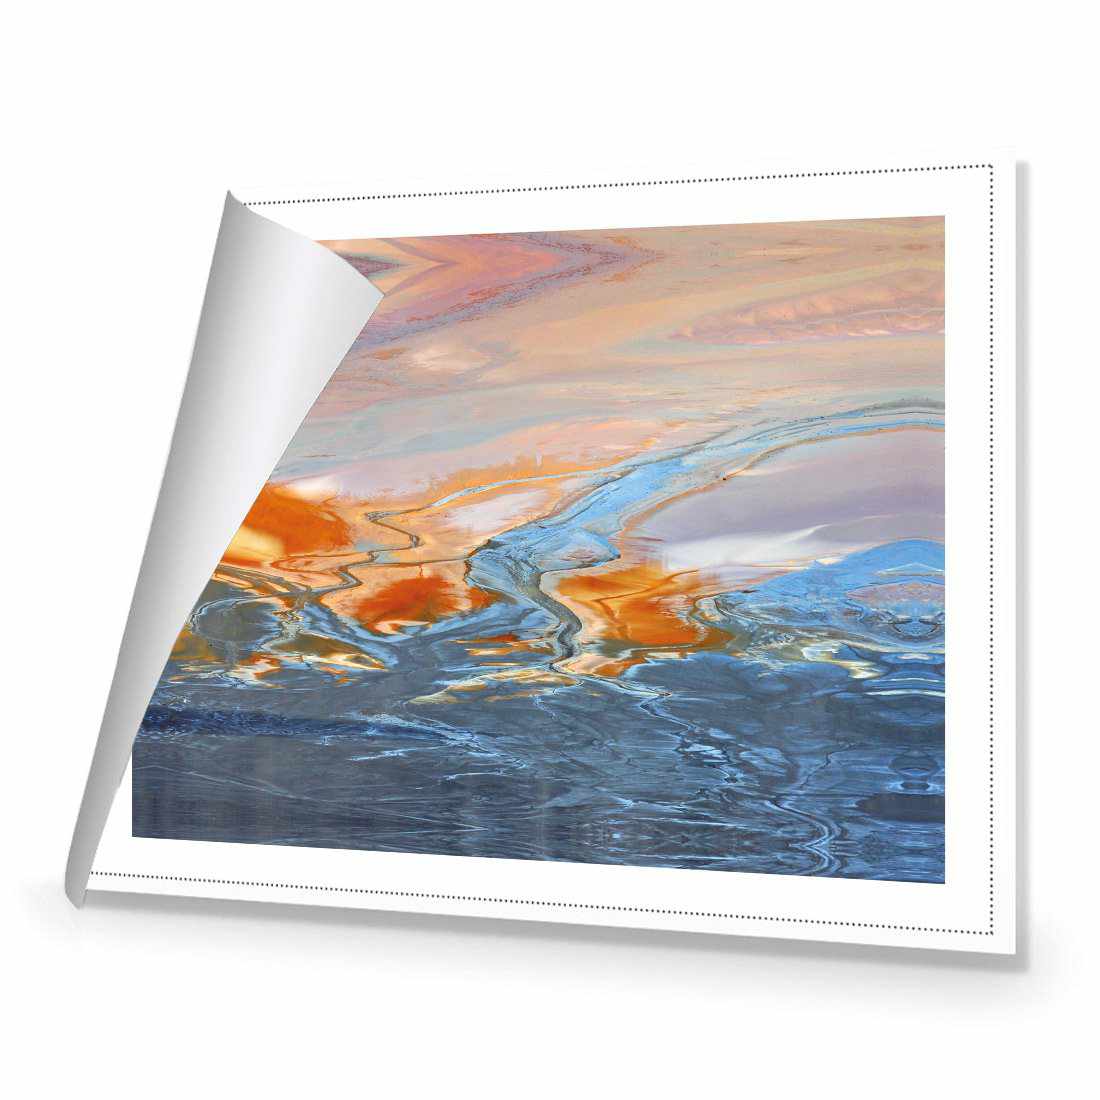 Golden Tint Canvas Art-Canvas-Wall Art Designs-45x30cm-Rolled Canvas-Wall Art Designs